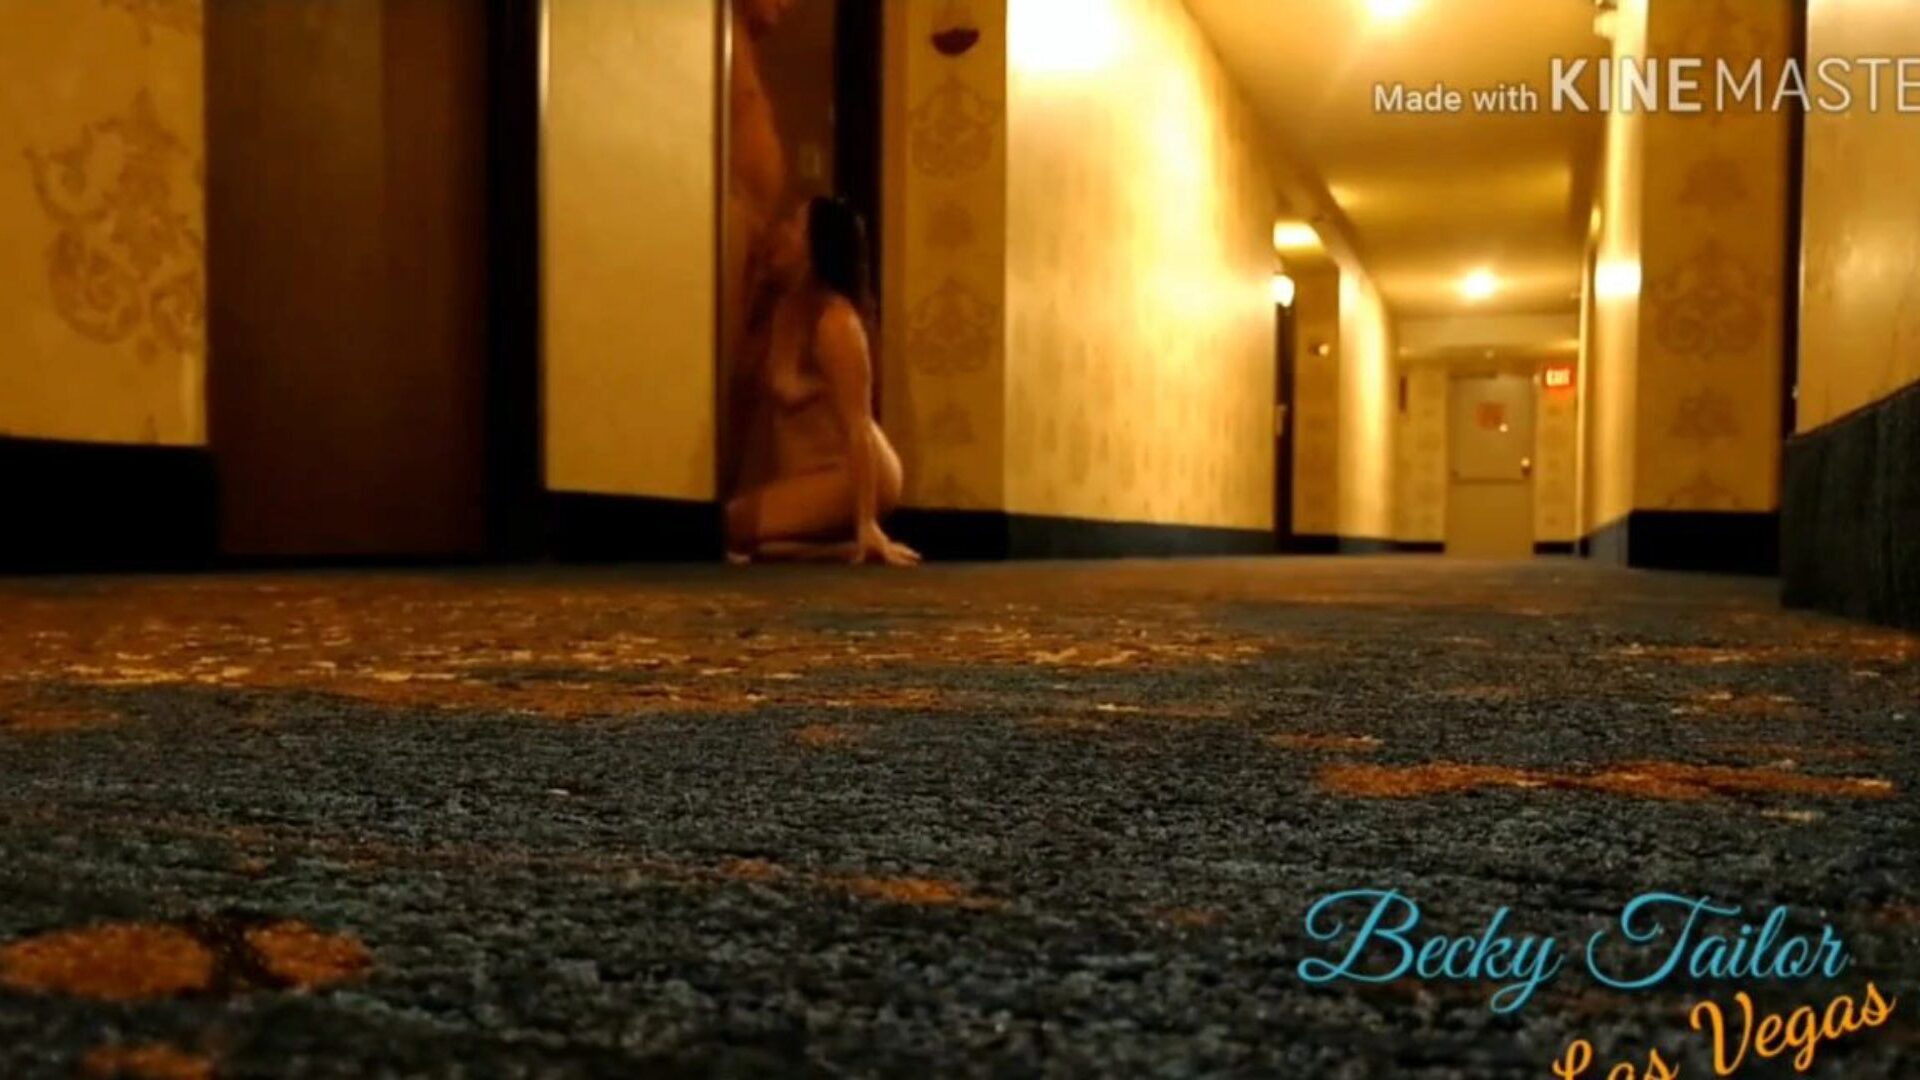 pieprzona żona na korytarzu hotelu w Vegas, darmowe porno 0b: xhamster oglądaj ruchającą się żonę w korytarzu hotelu w Vegas klip na xhamster, najdoskonalsza strona internetowa z seksem w jakości HD z mnóstwem matek dla wszystkich, które chciałbym pieprzyć podglądaczem i ukrytą kamerą filmy porno